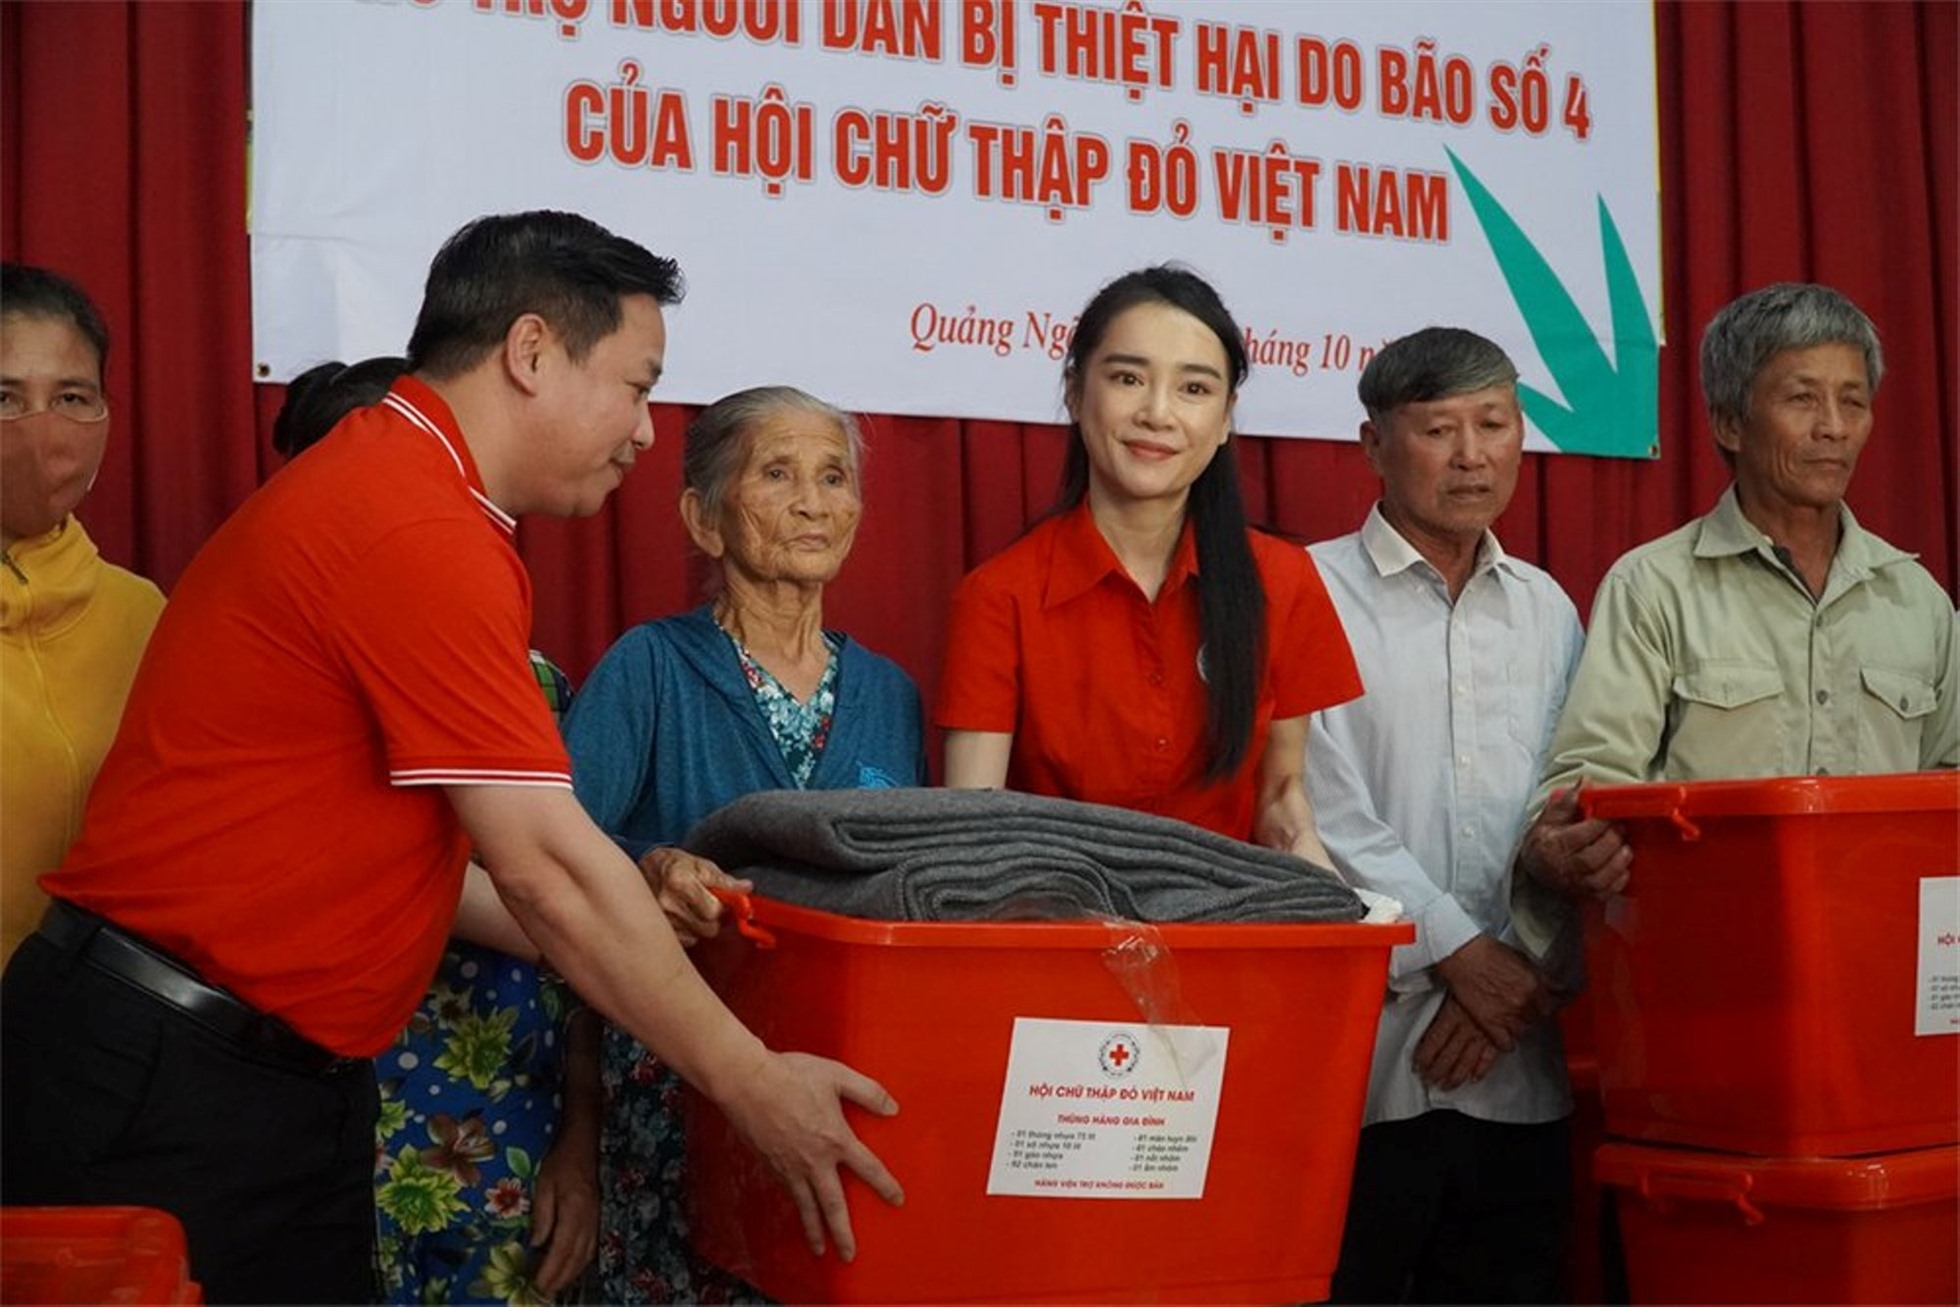 Diễn viên Nhã Phương, đại sứ chương trình “Dinh dưỡng cho em“, cũng đi cùng đoàn và trao quà hỗ trợ các hộ dân bị thiệt hại do bão Noru.